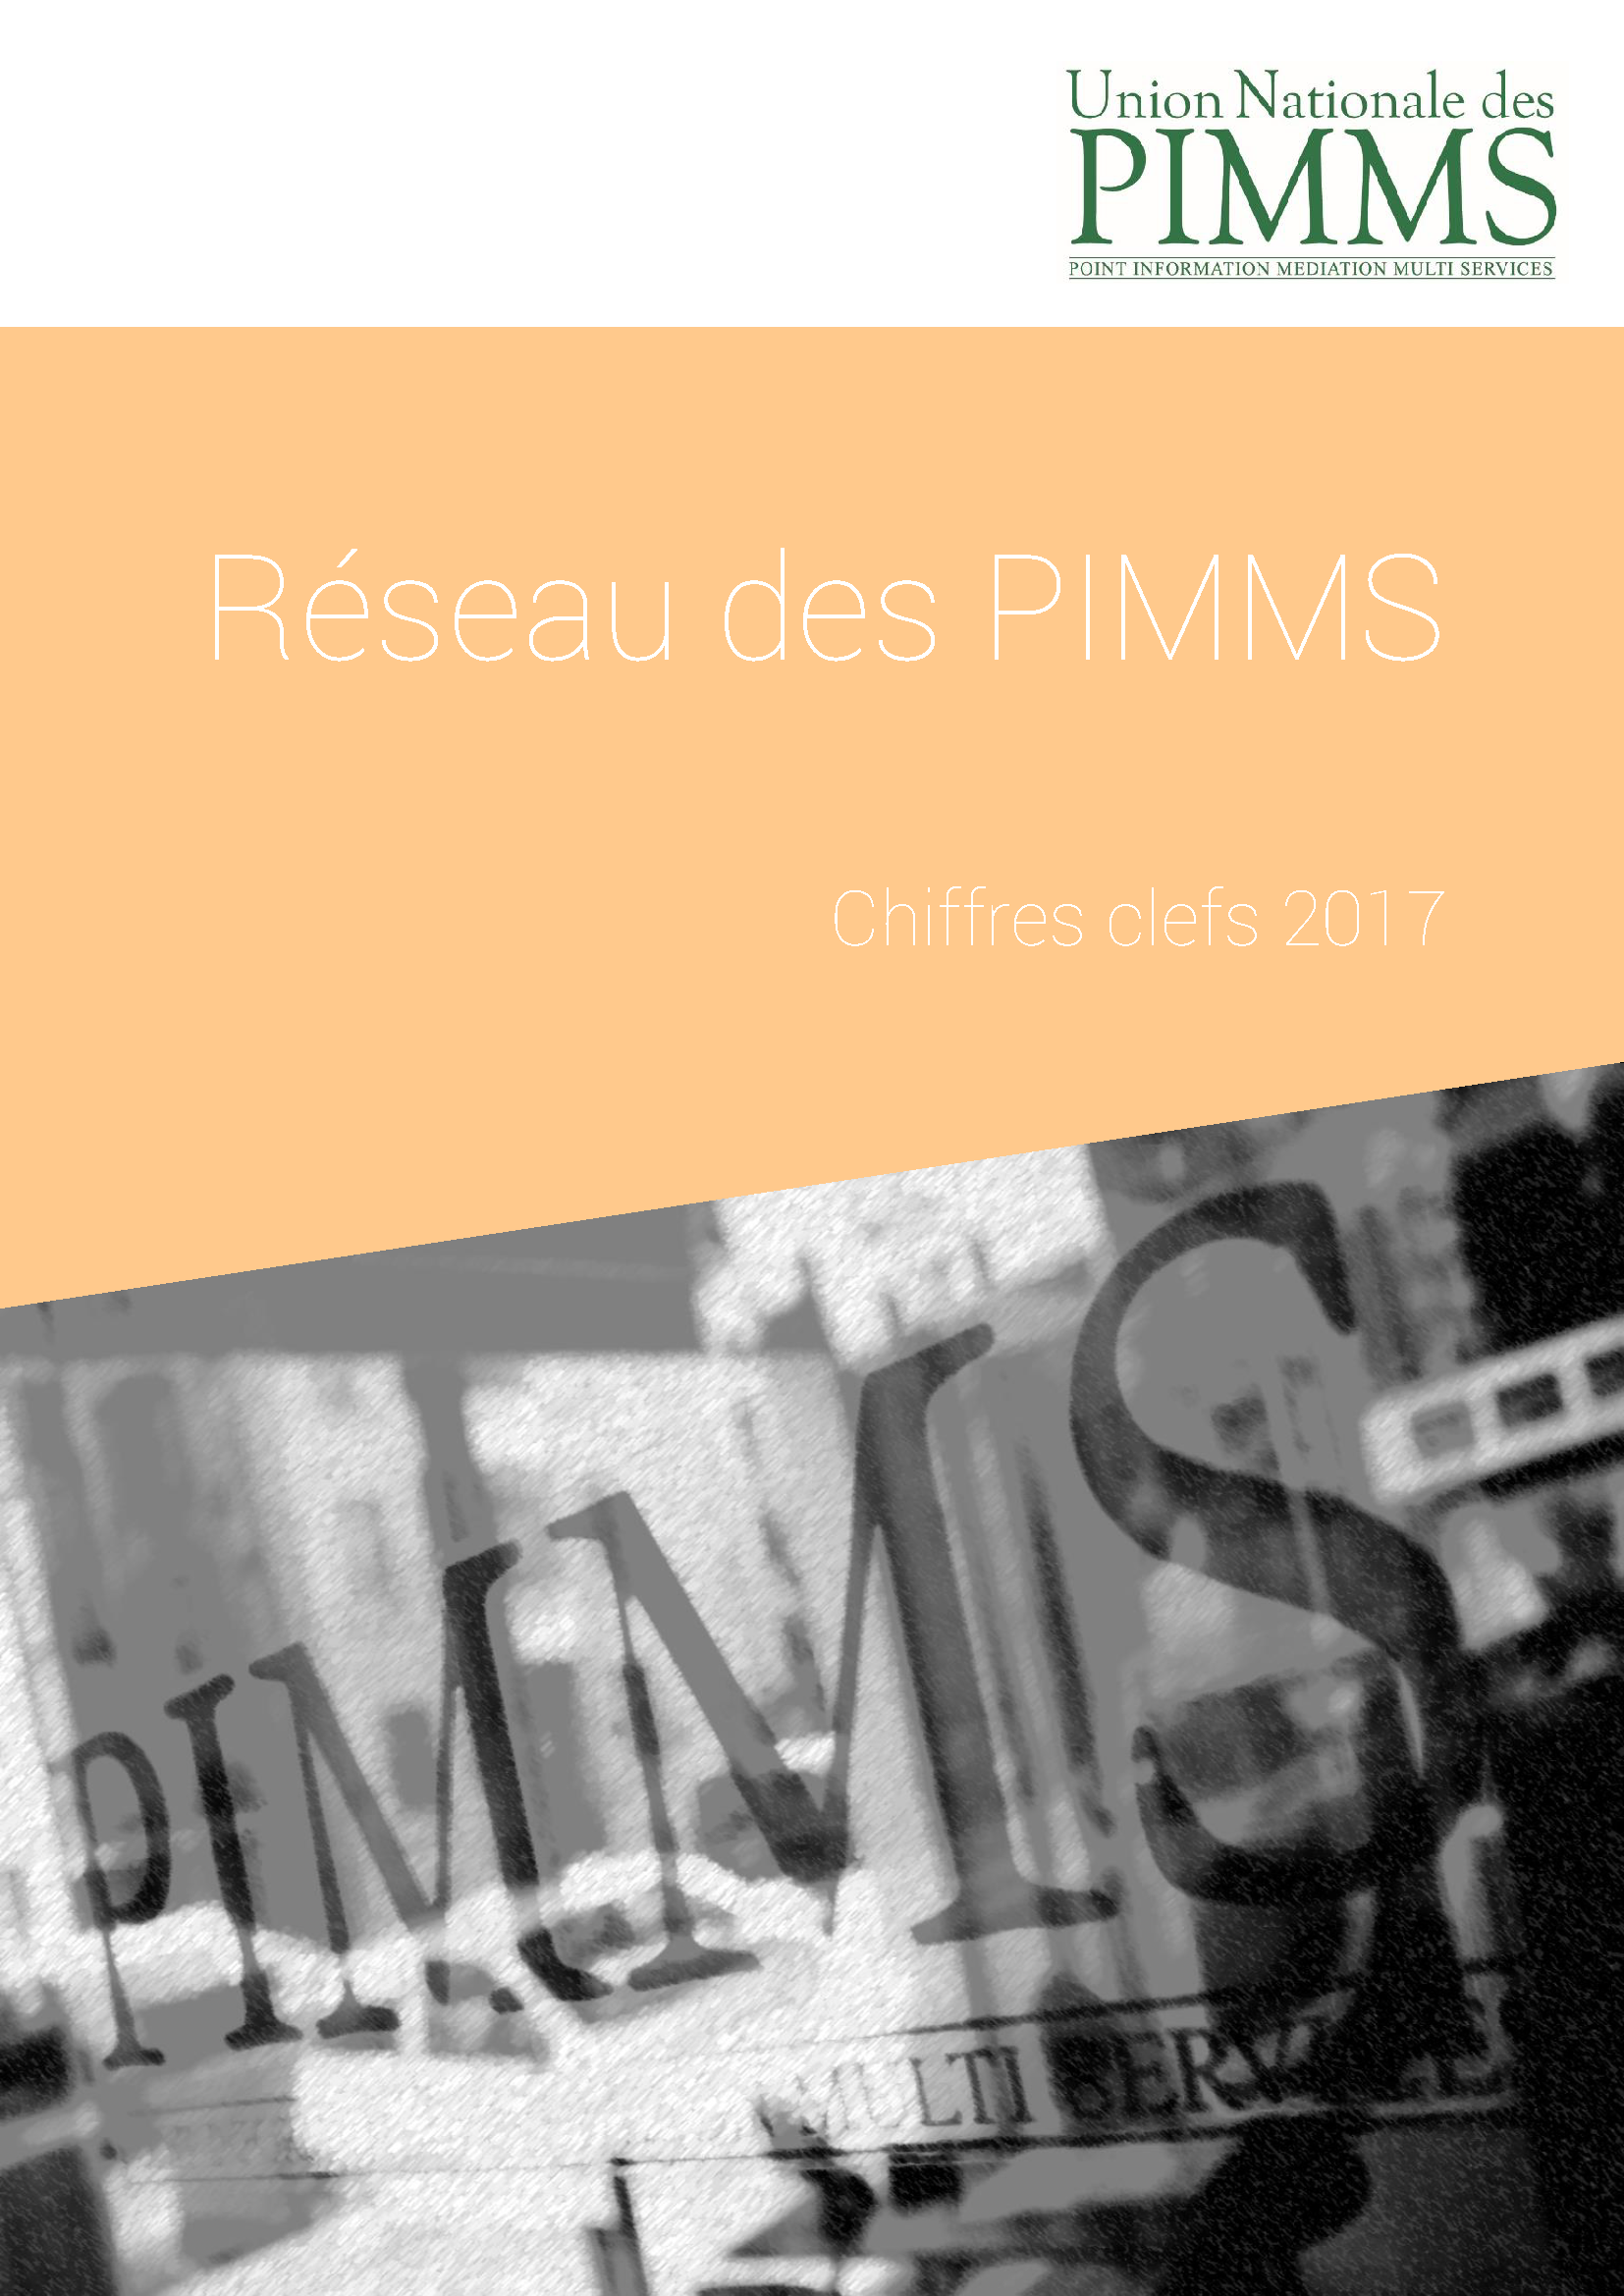 Chiffres clefs 2017 du réseau des PIMMS_Page_1